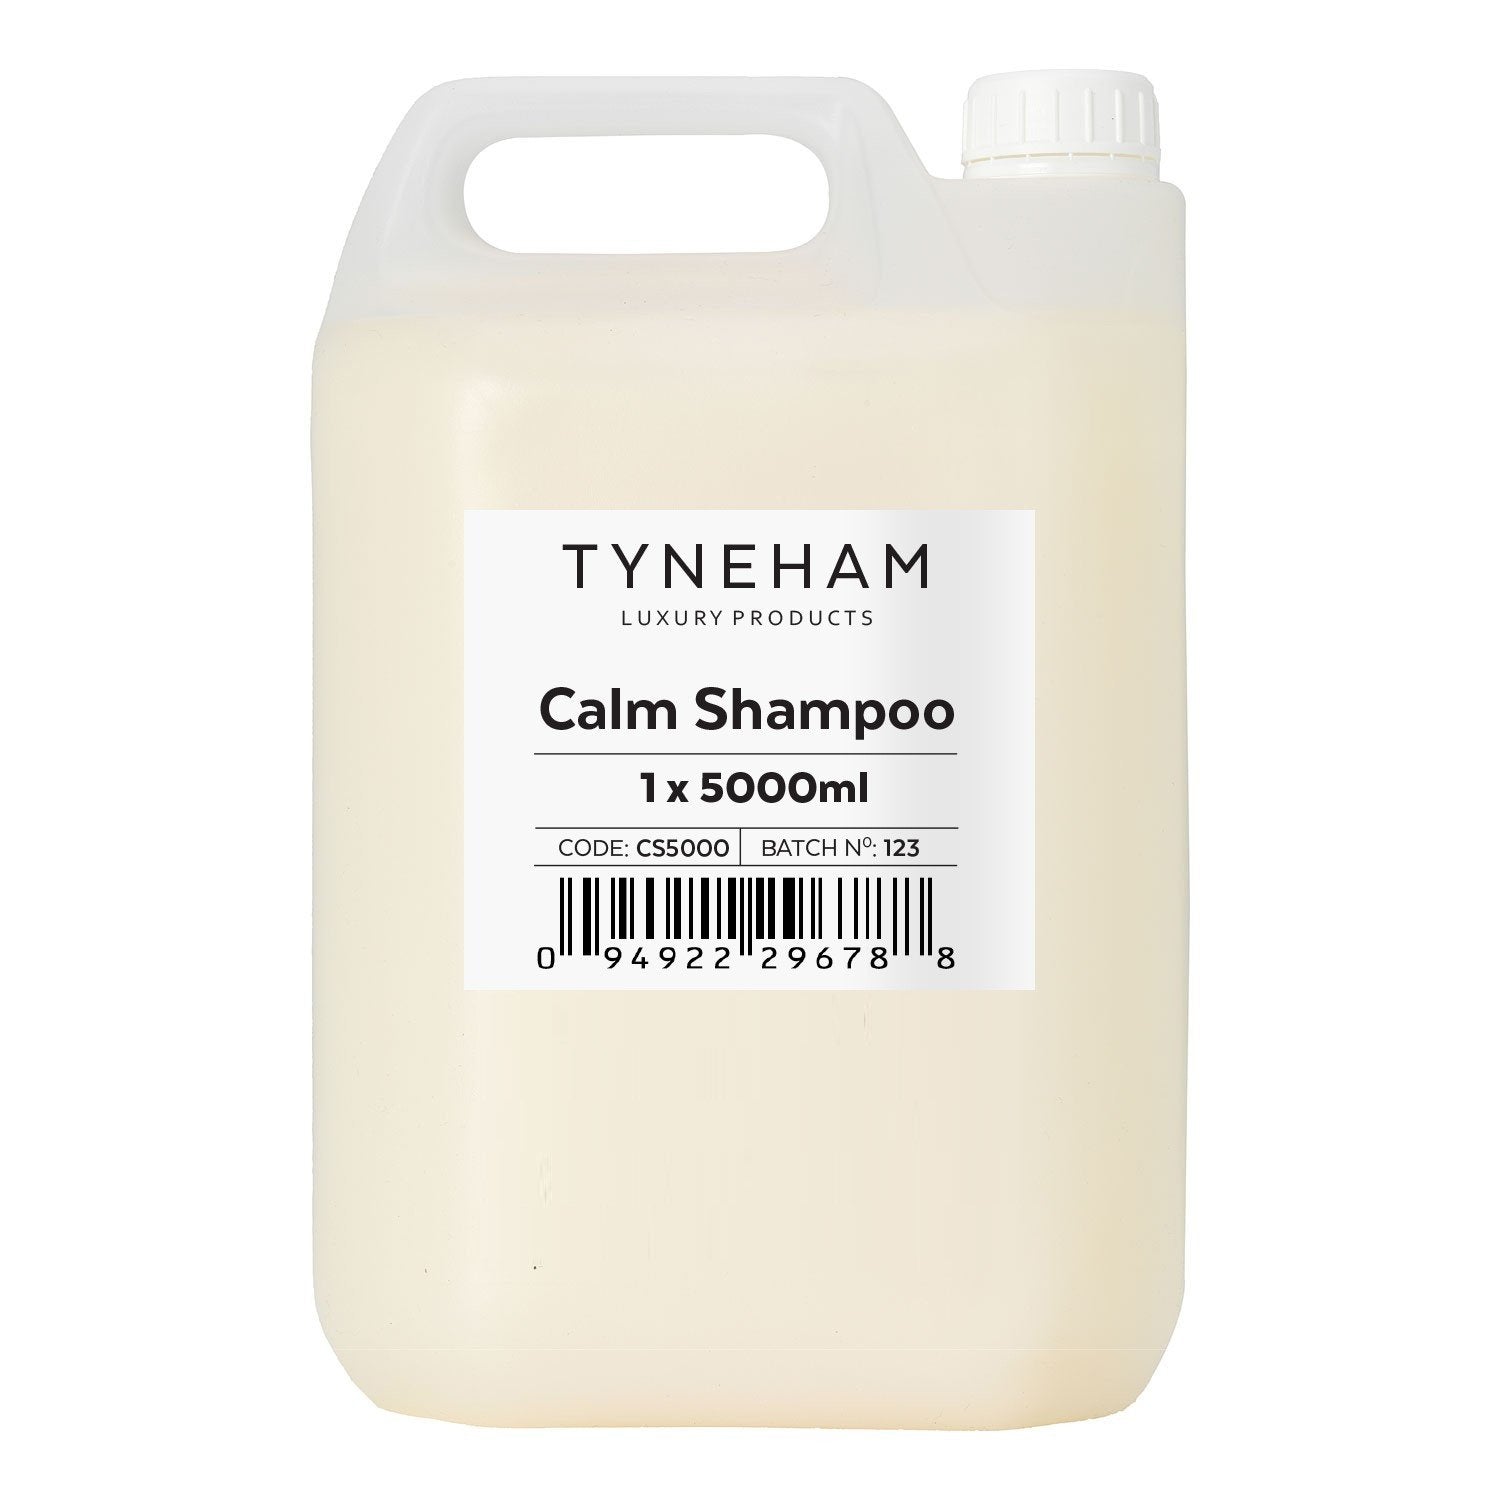 Calm Shampoo 5000ml